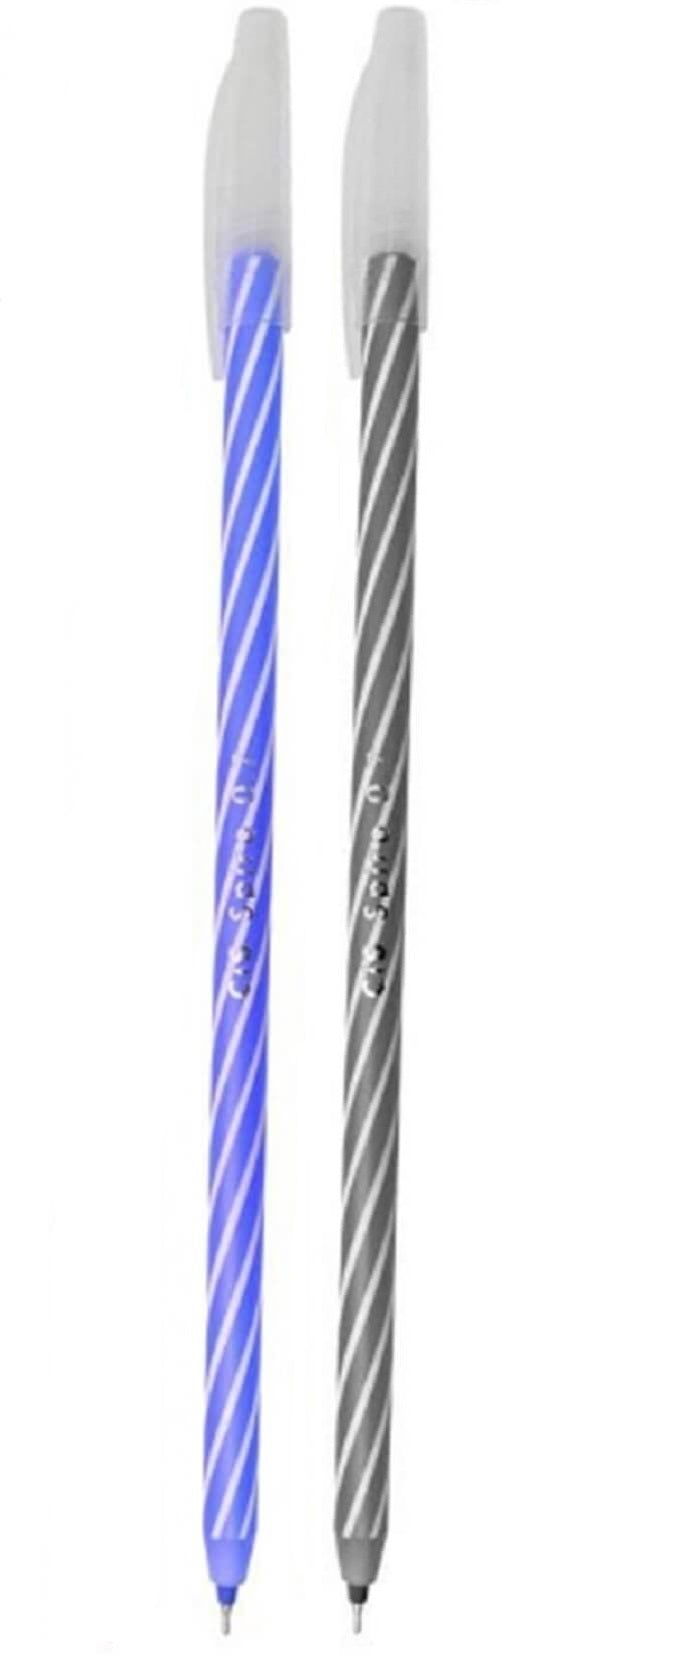 Caneta Esferográfica Spiro  0.7 mm c/ 2 Cores Preta e Azul - Cis